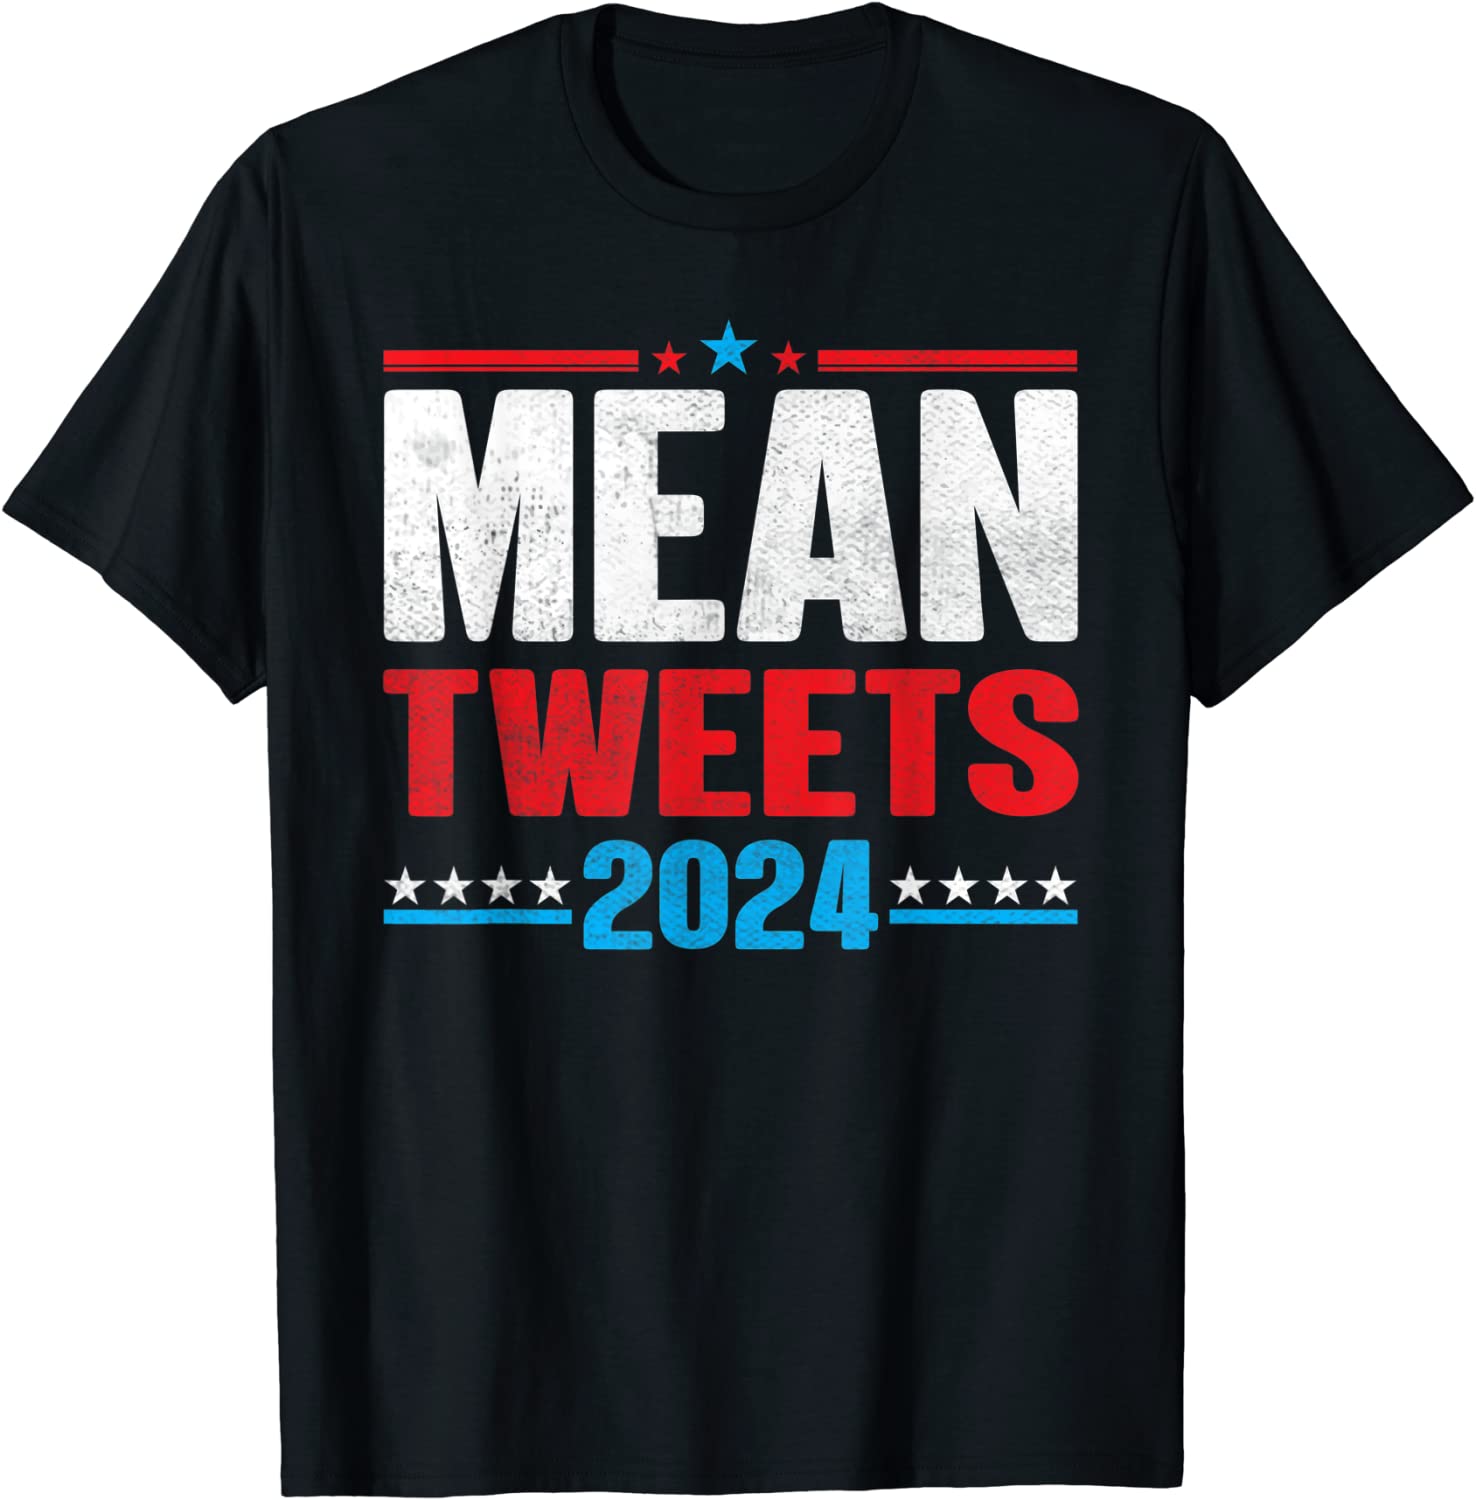 Amazon.com: Mean Tweets 2024 Funny Pro Trump Mean Tweets Election T ...